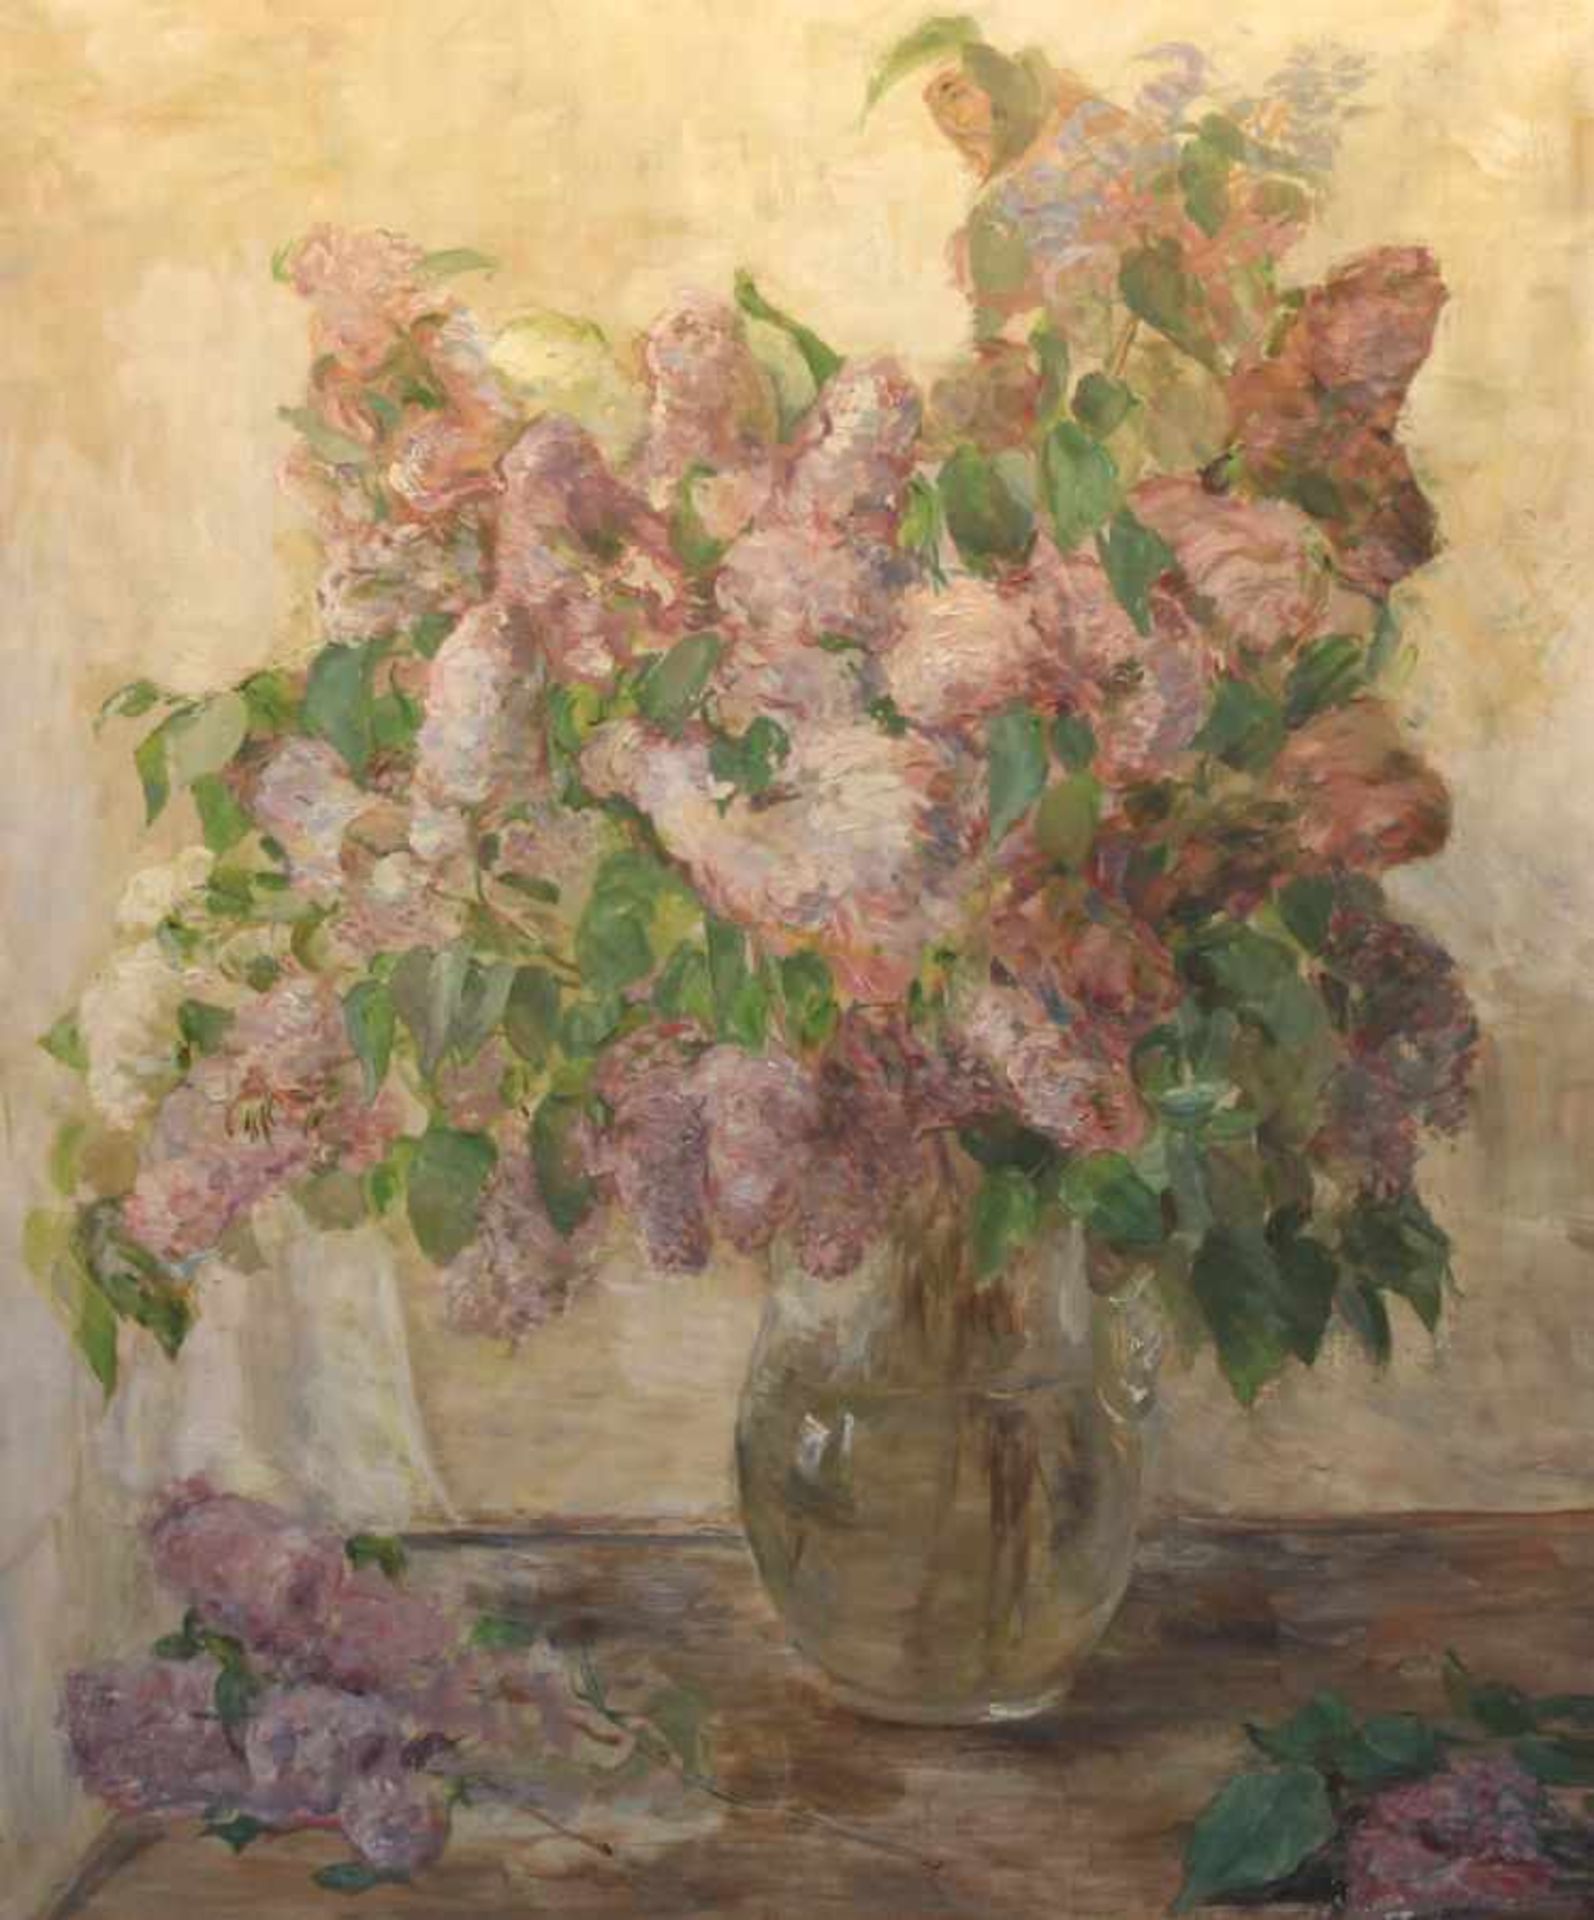 Gemälde - Lina Röhrer (Ingolstadt 1866 - 1920) "Blumenstillleben", unsigniert (schriftliche